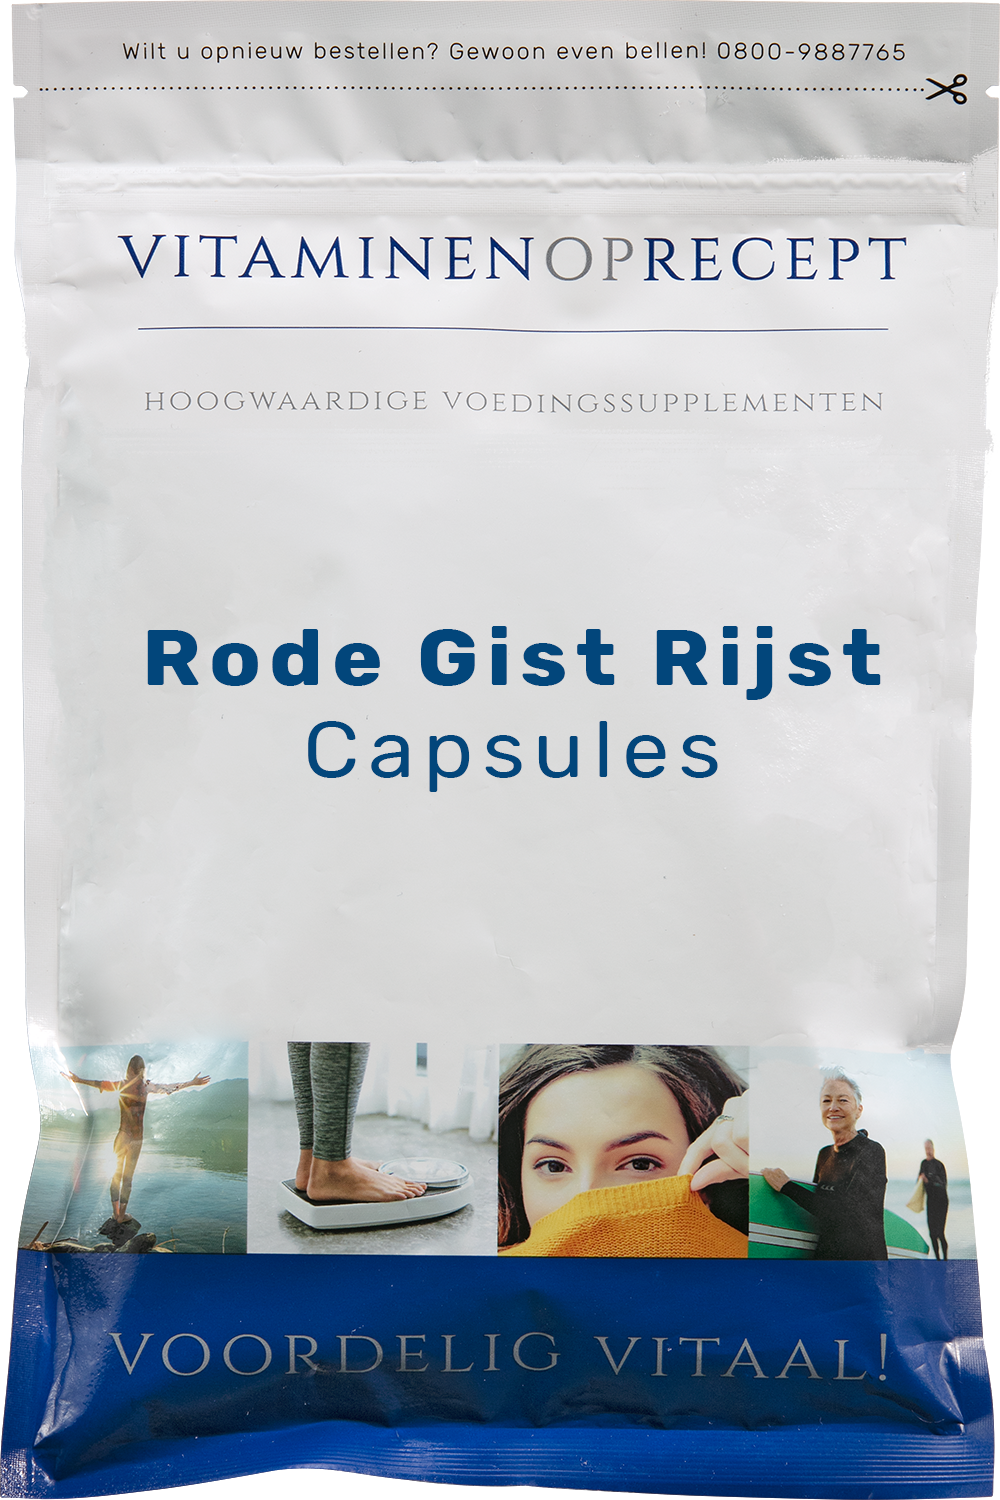 Uitstekend schotel wasmiddel Rode Gist Rijst Capsules | Vitaminen op Recept